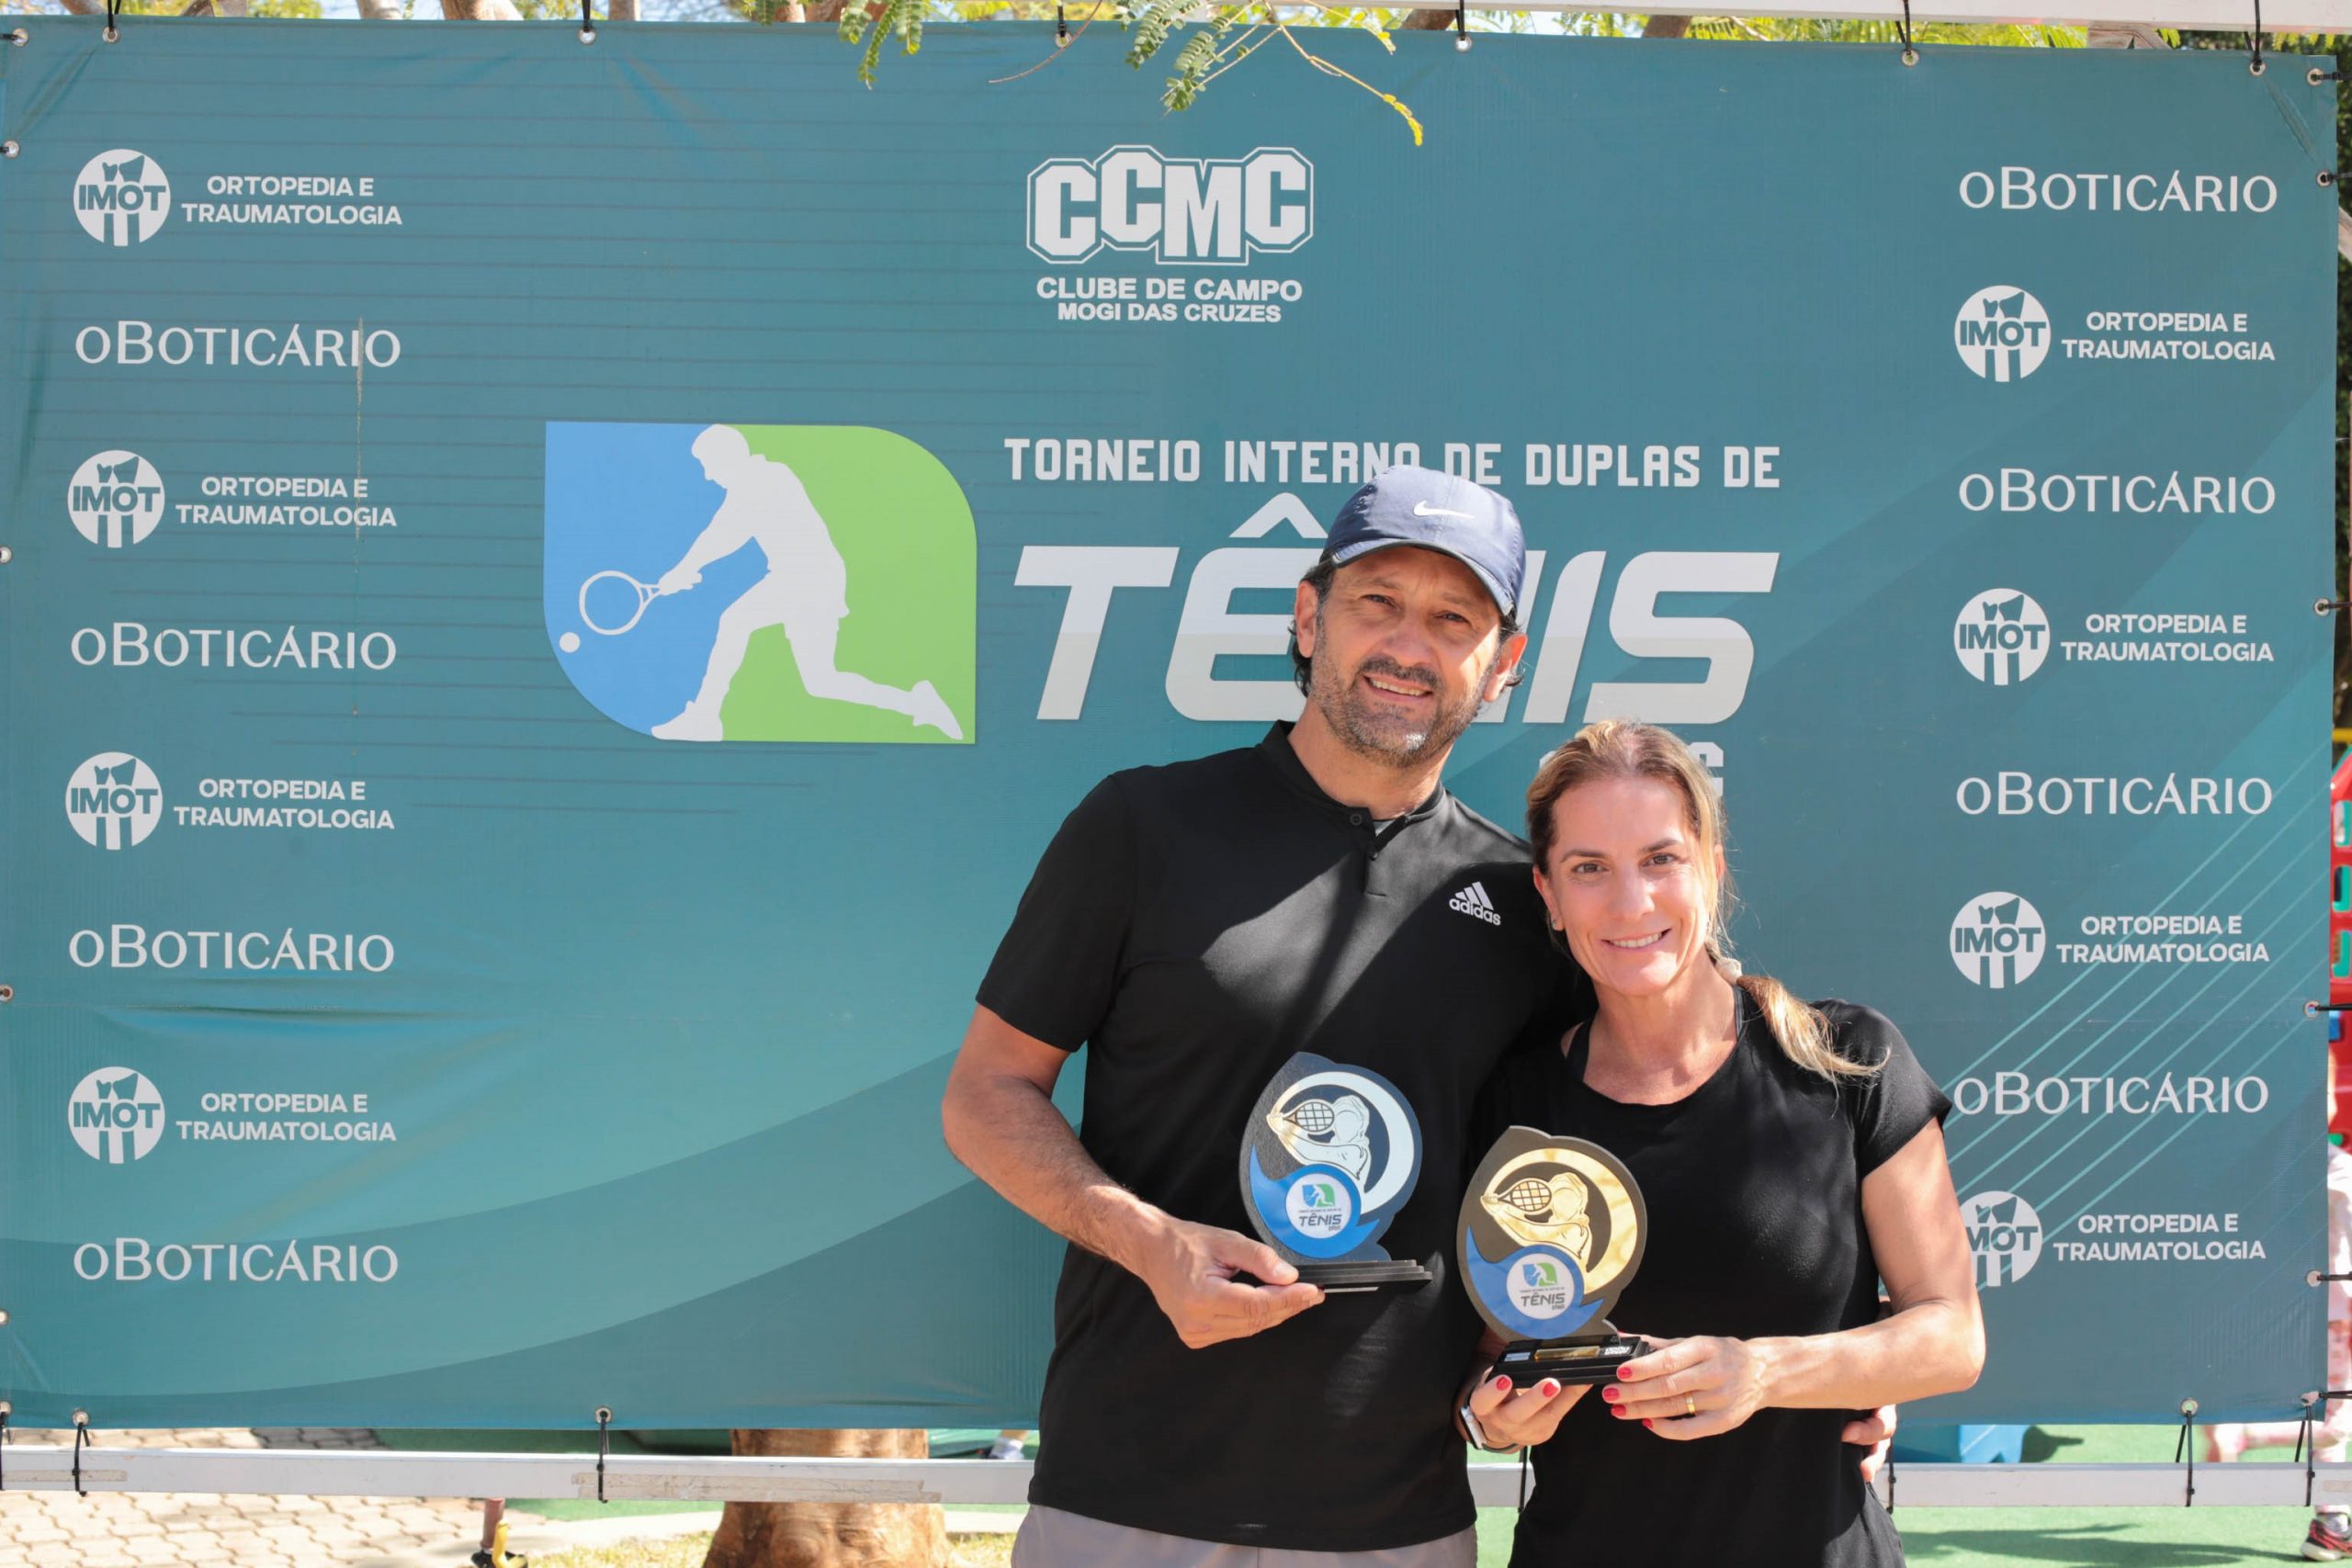 Torneio de Tênis Simples CCMC  Clube de Campo de Mogi das Cruzes